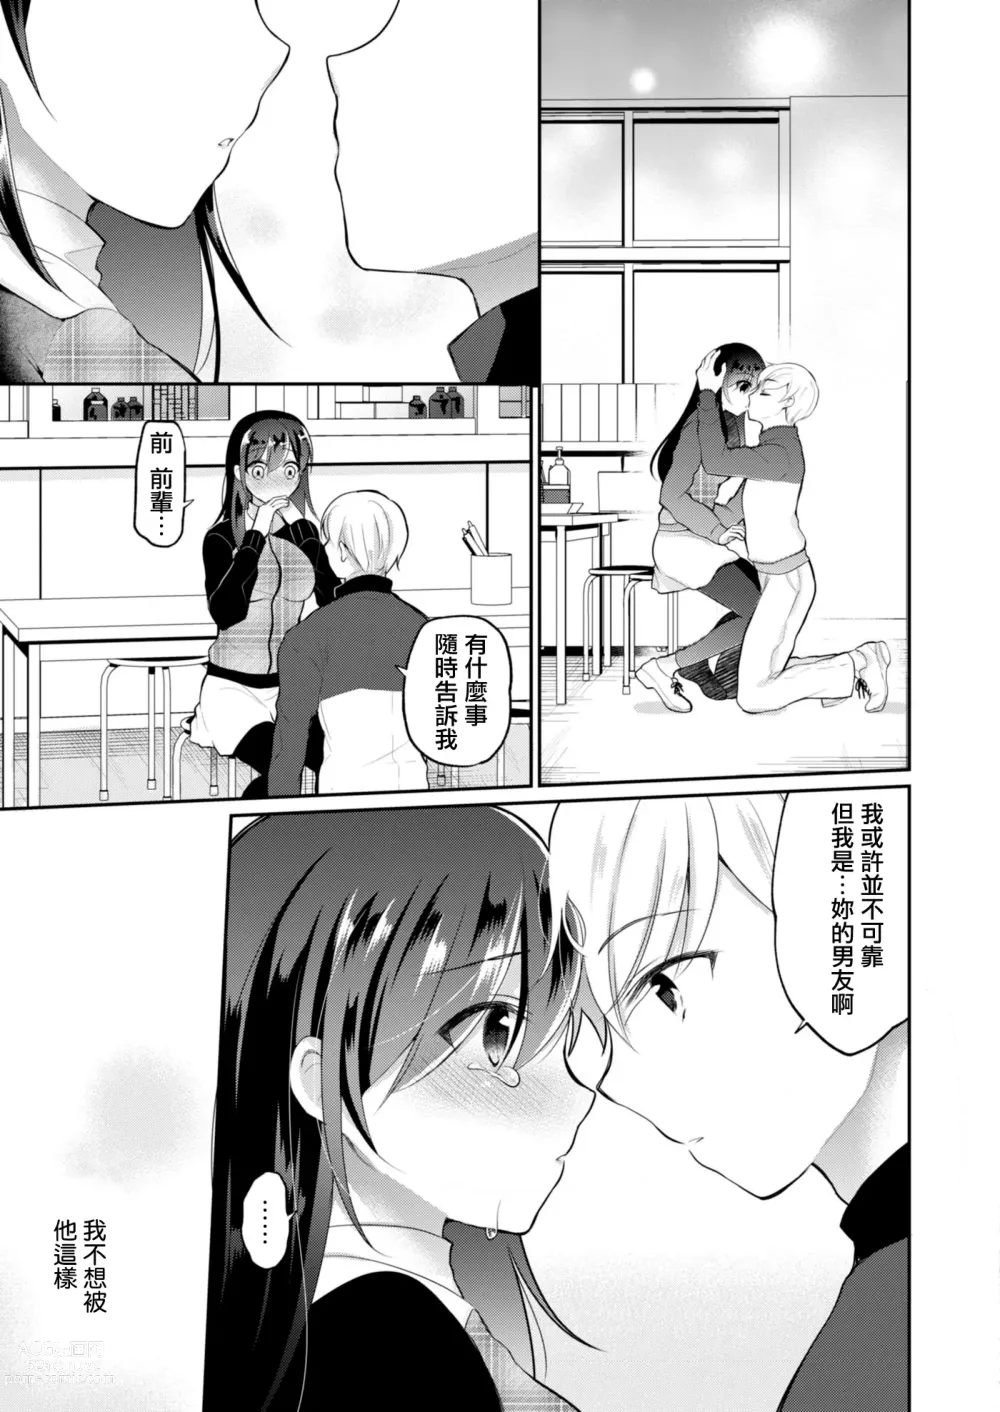 Page 4 of manga Netorare JK Kanojo File.4 Fuyu no Owari no Binetsu Kouhen